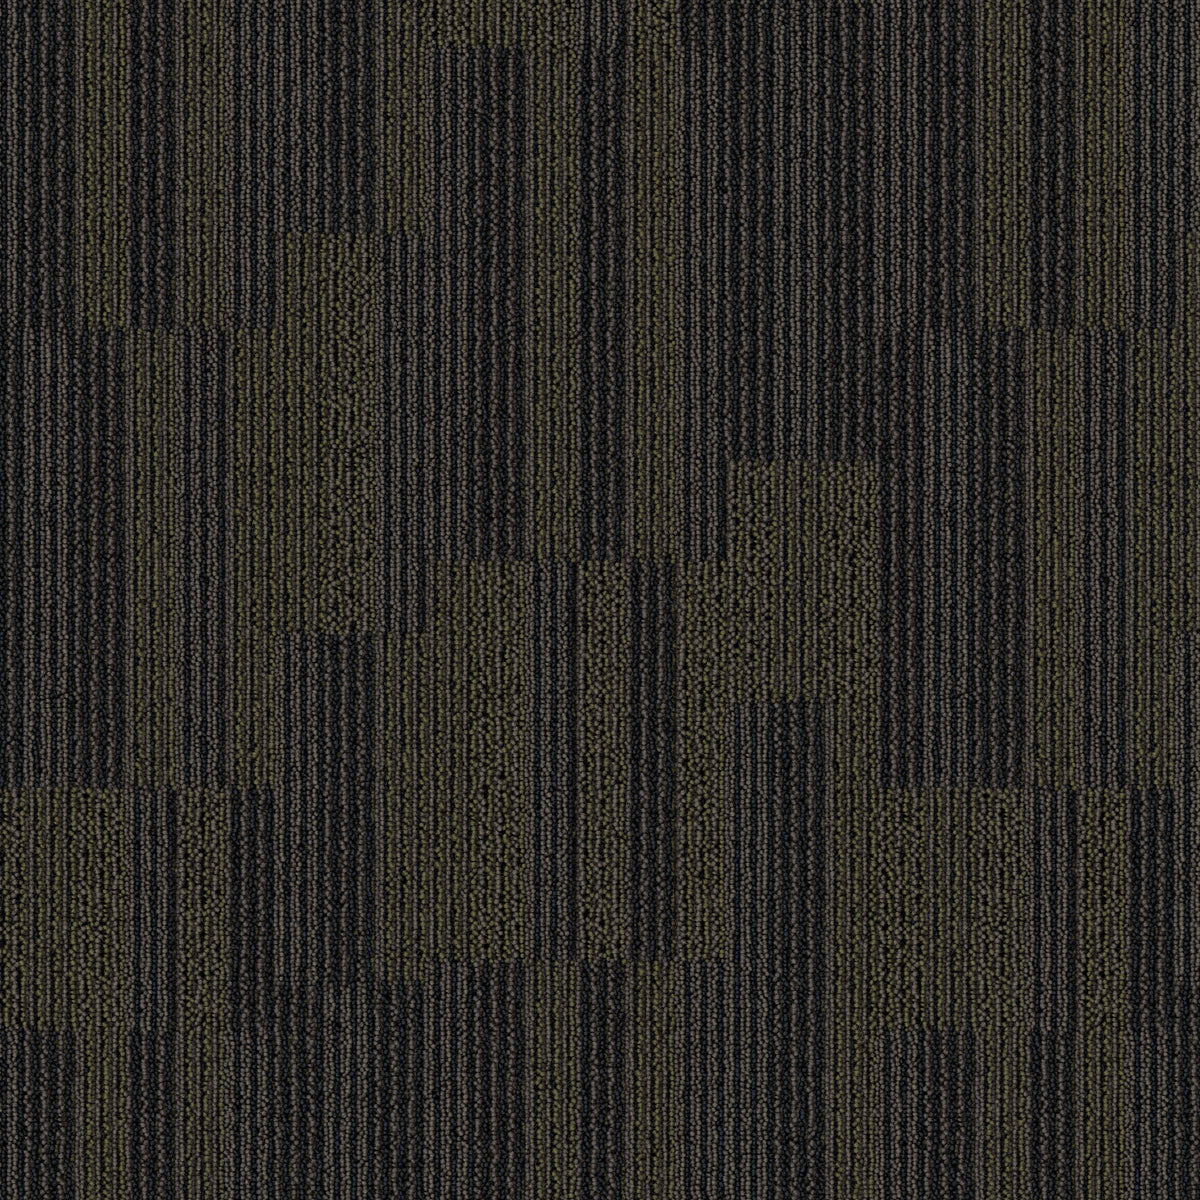 Mohawk Group - Bending Earth - Sector - Carpet Tile - Ore